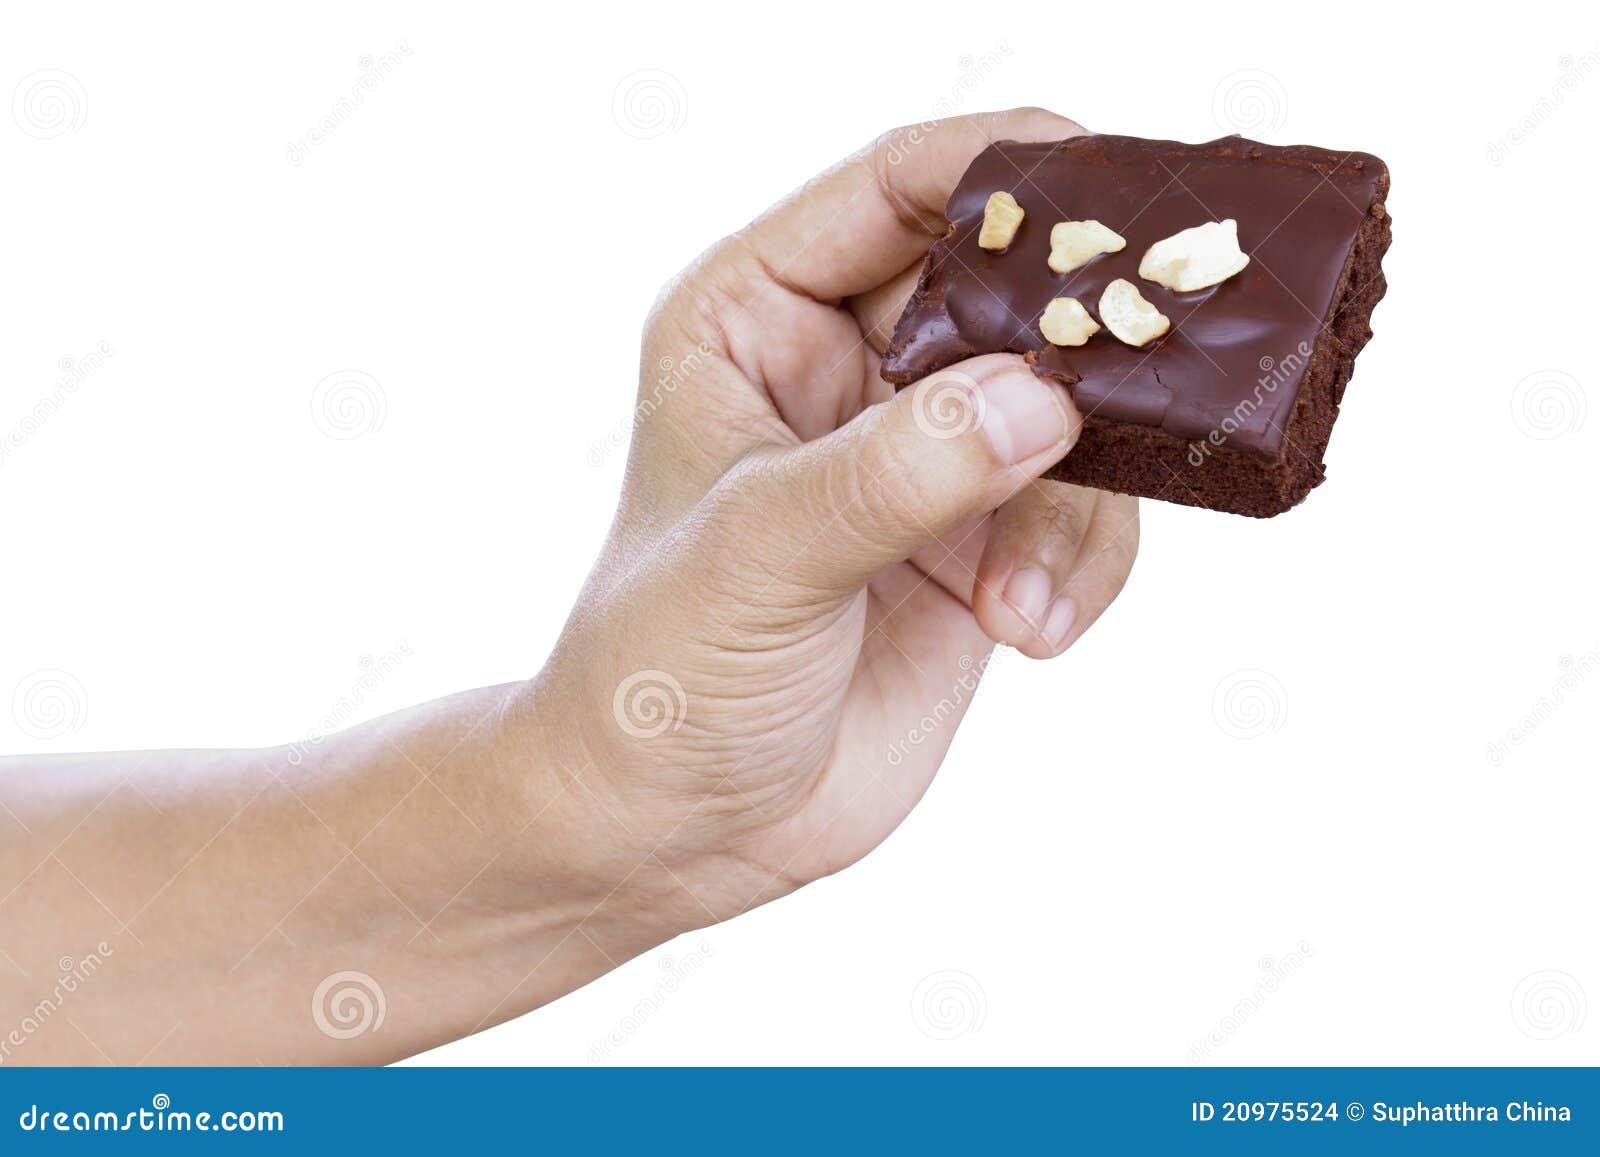 Дядя тянет руку в руке шоколадка. Шоколадка в руке. Белый шоколад в руке. Шоколадка в ладонях. Кусок шоколадки в руке.